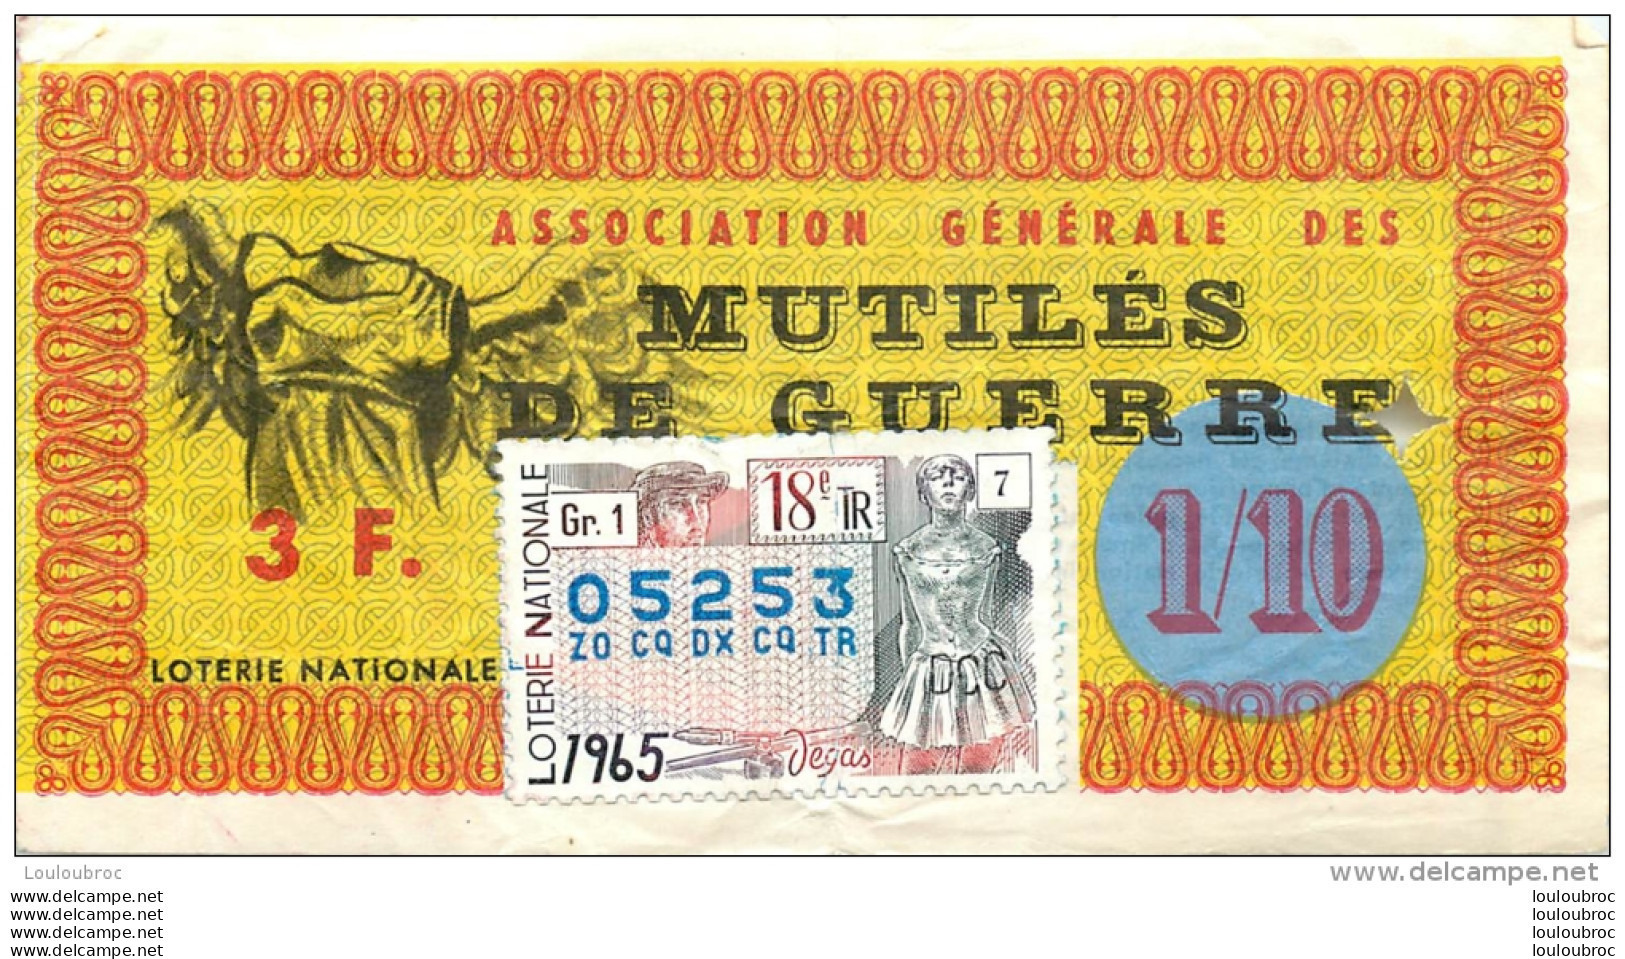 BILLET DE LOTERIE NATIONALE 1965 ASSOCIATION GENERALE DES MUTILES DE GUERRE - Lottery Tickets